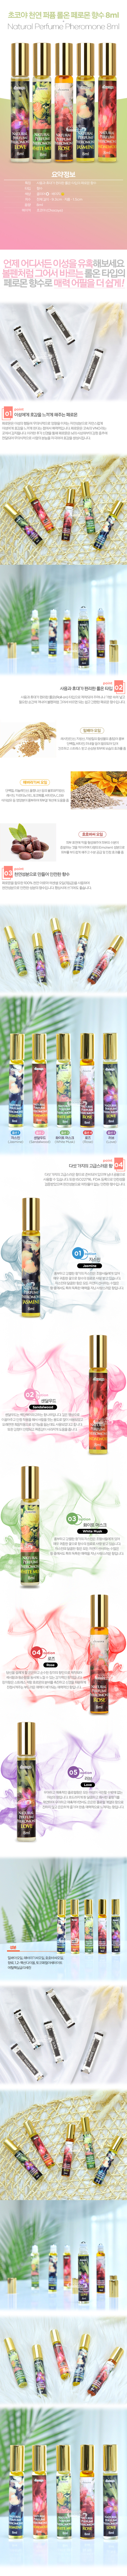 [페로몬 향수] 초코야 천연 퍼퓸 롤온 페로몬 향수 8ml(Chocoya Natural Perfume Roll-on Pheromone 8ml)